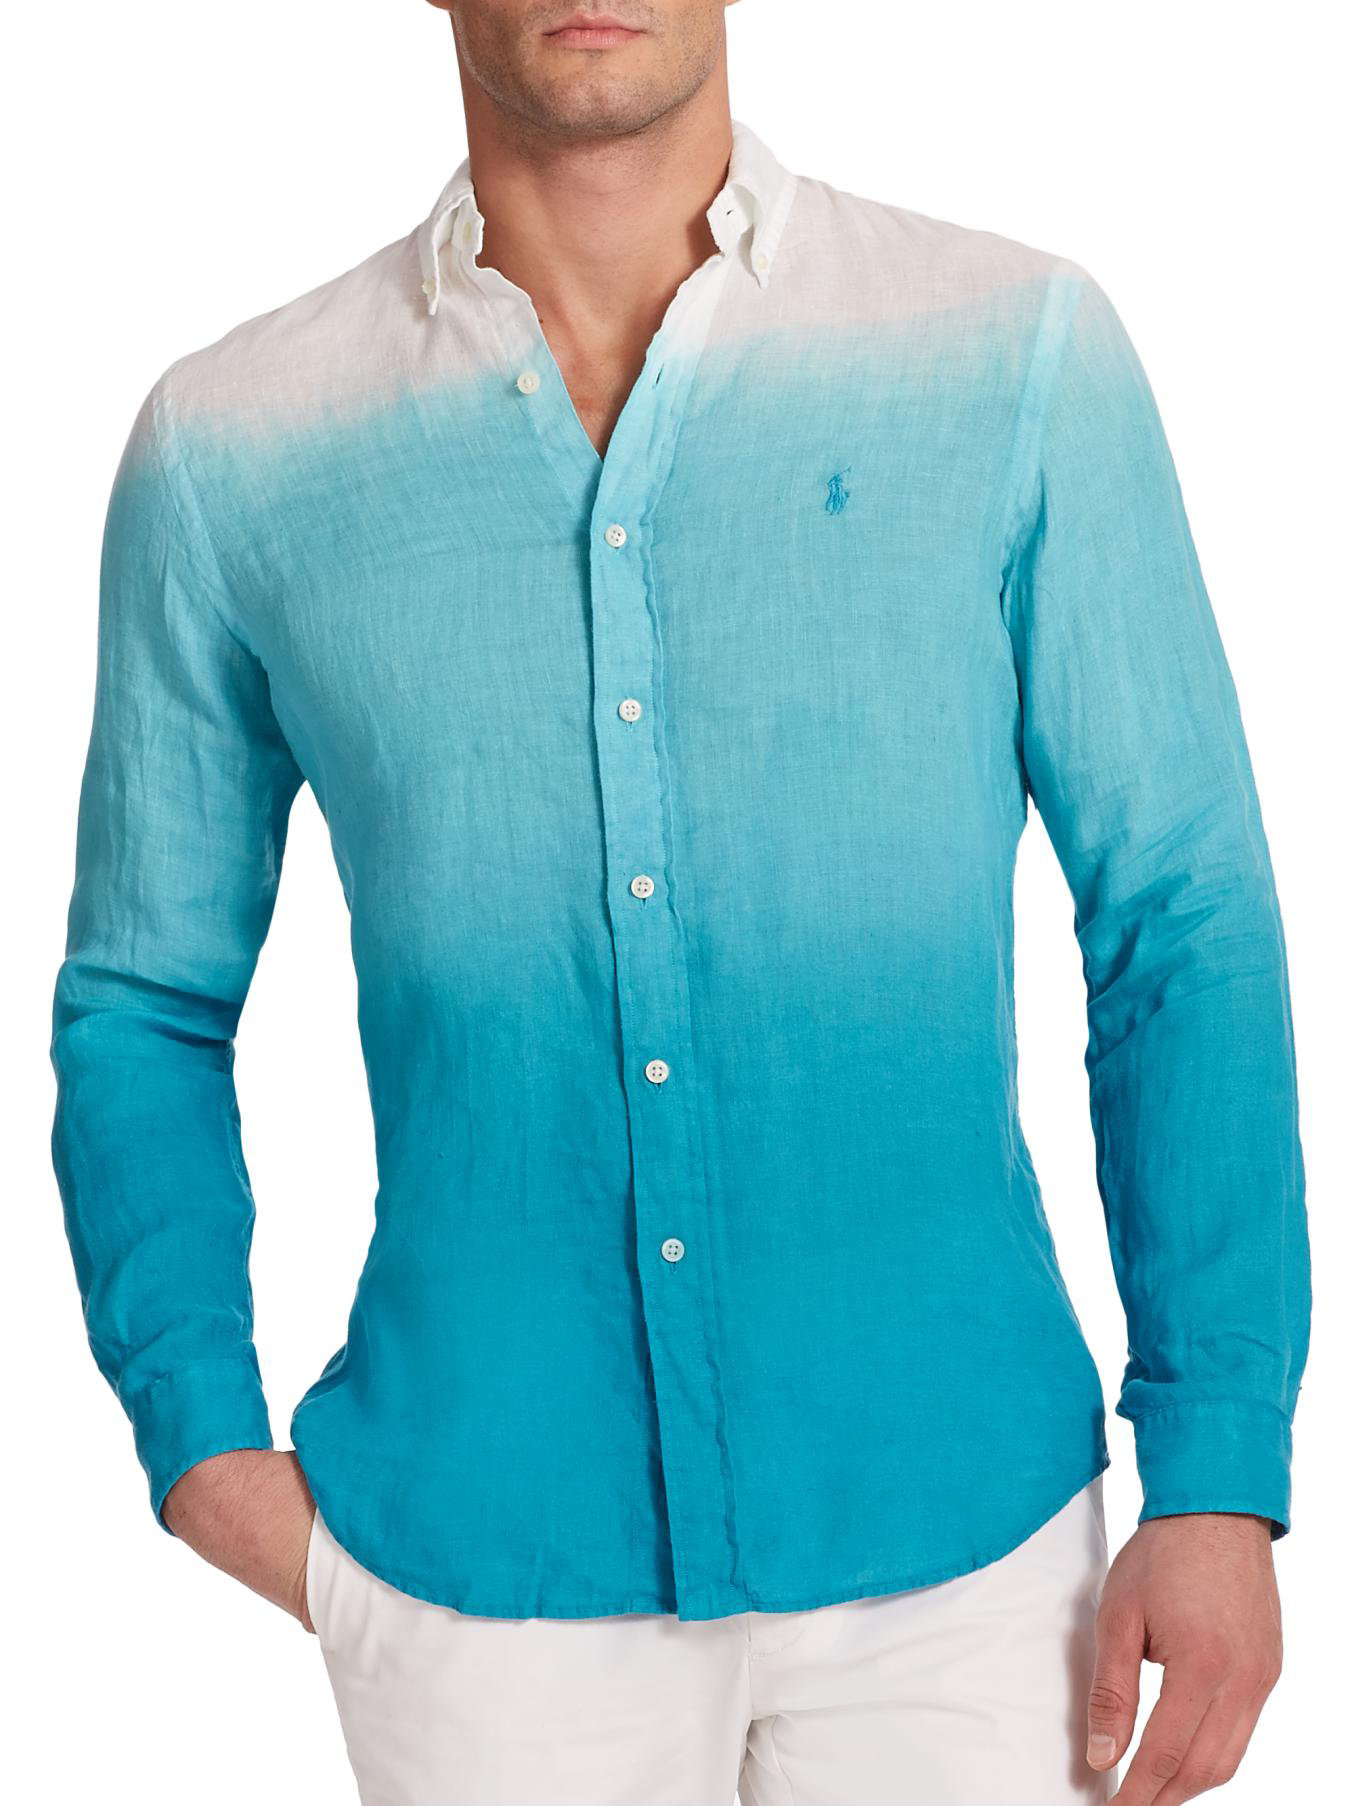 Lyst - Polo Ralph Lauren Dip-Dyed Linen Sportshirt in Blue for Men1354 x 1806